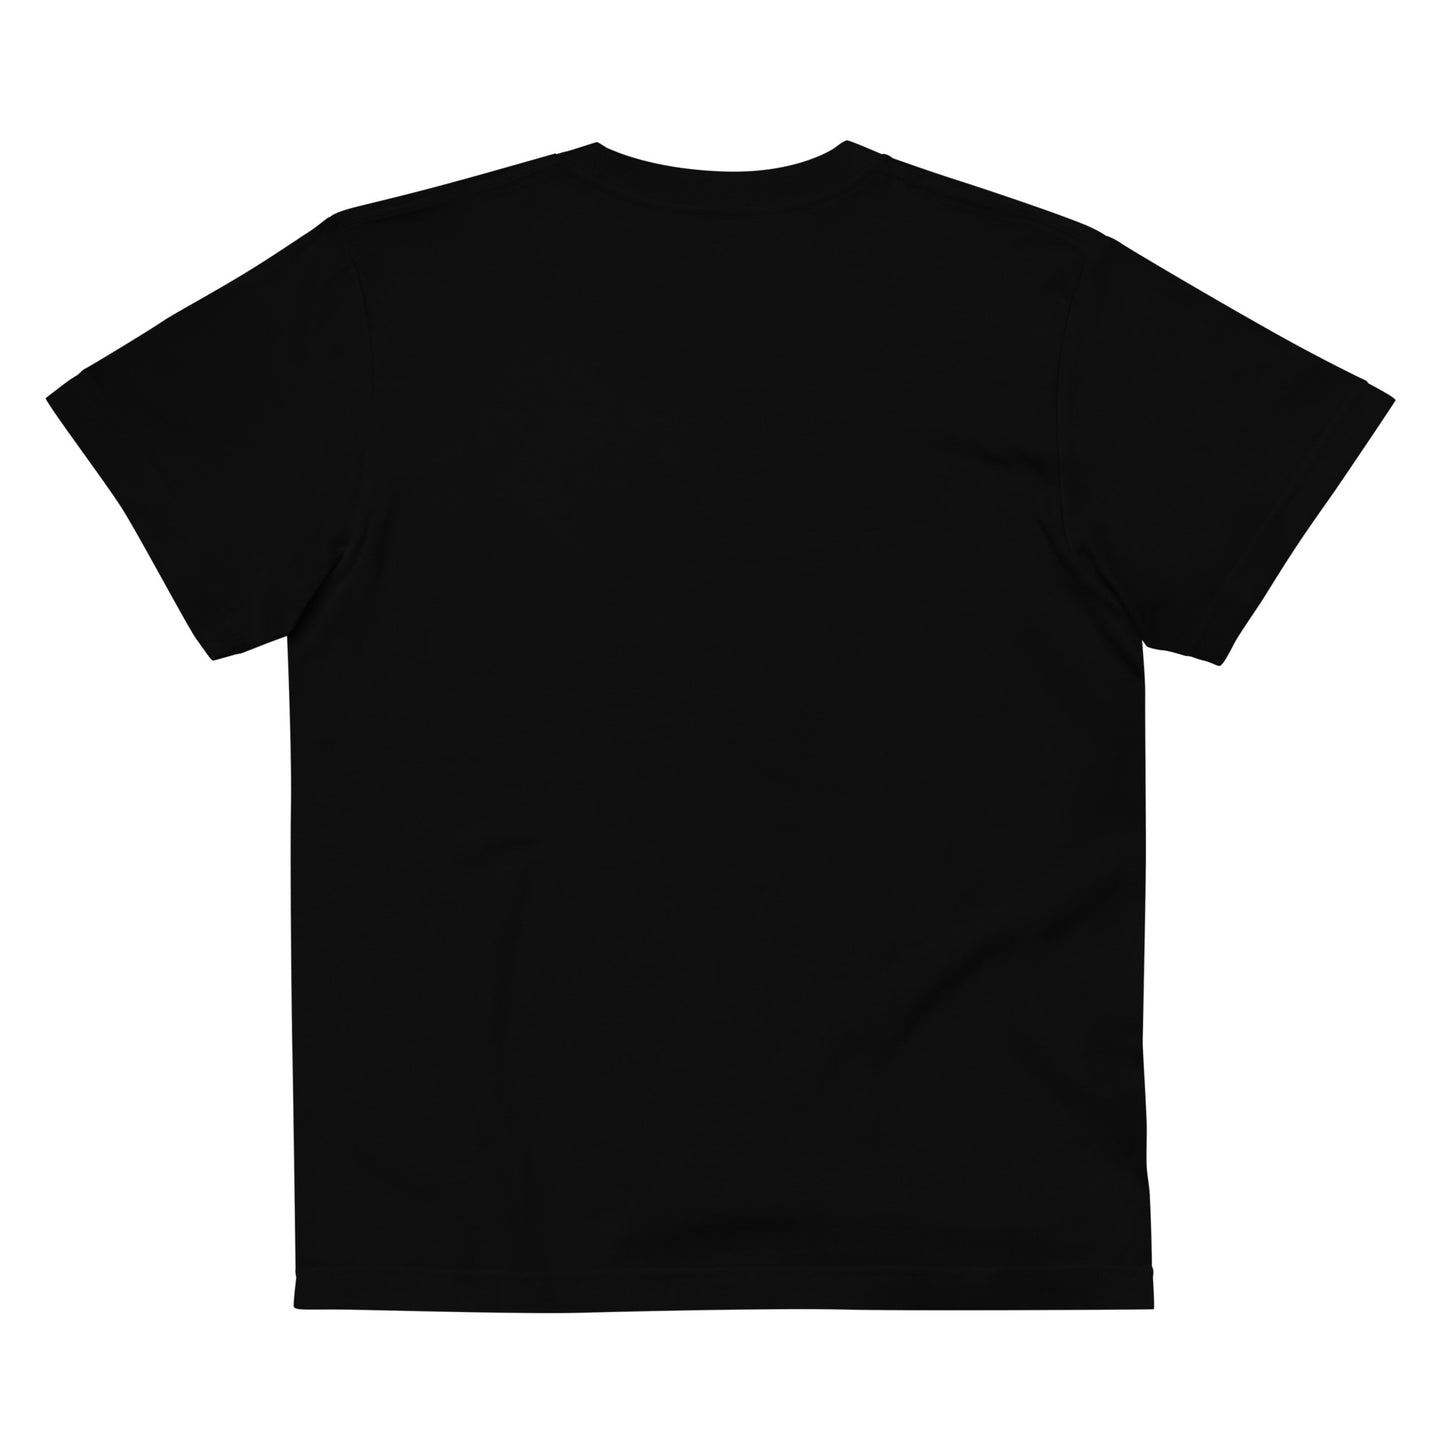 E015 - เสื้อยืด/รูปร่างมาตรฐาน (กระโดดอวกาศ : สีดำ/เงิน)